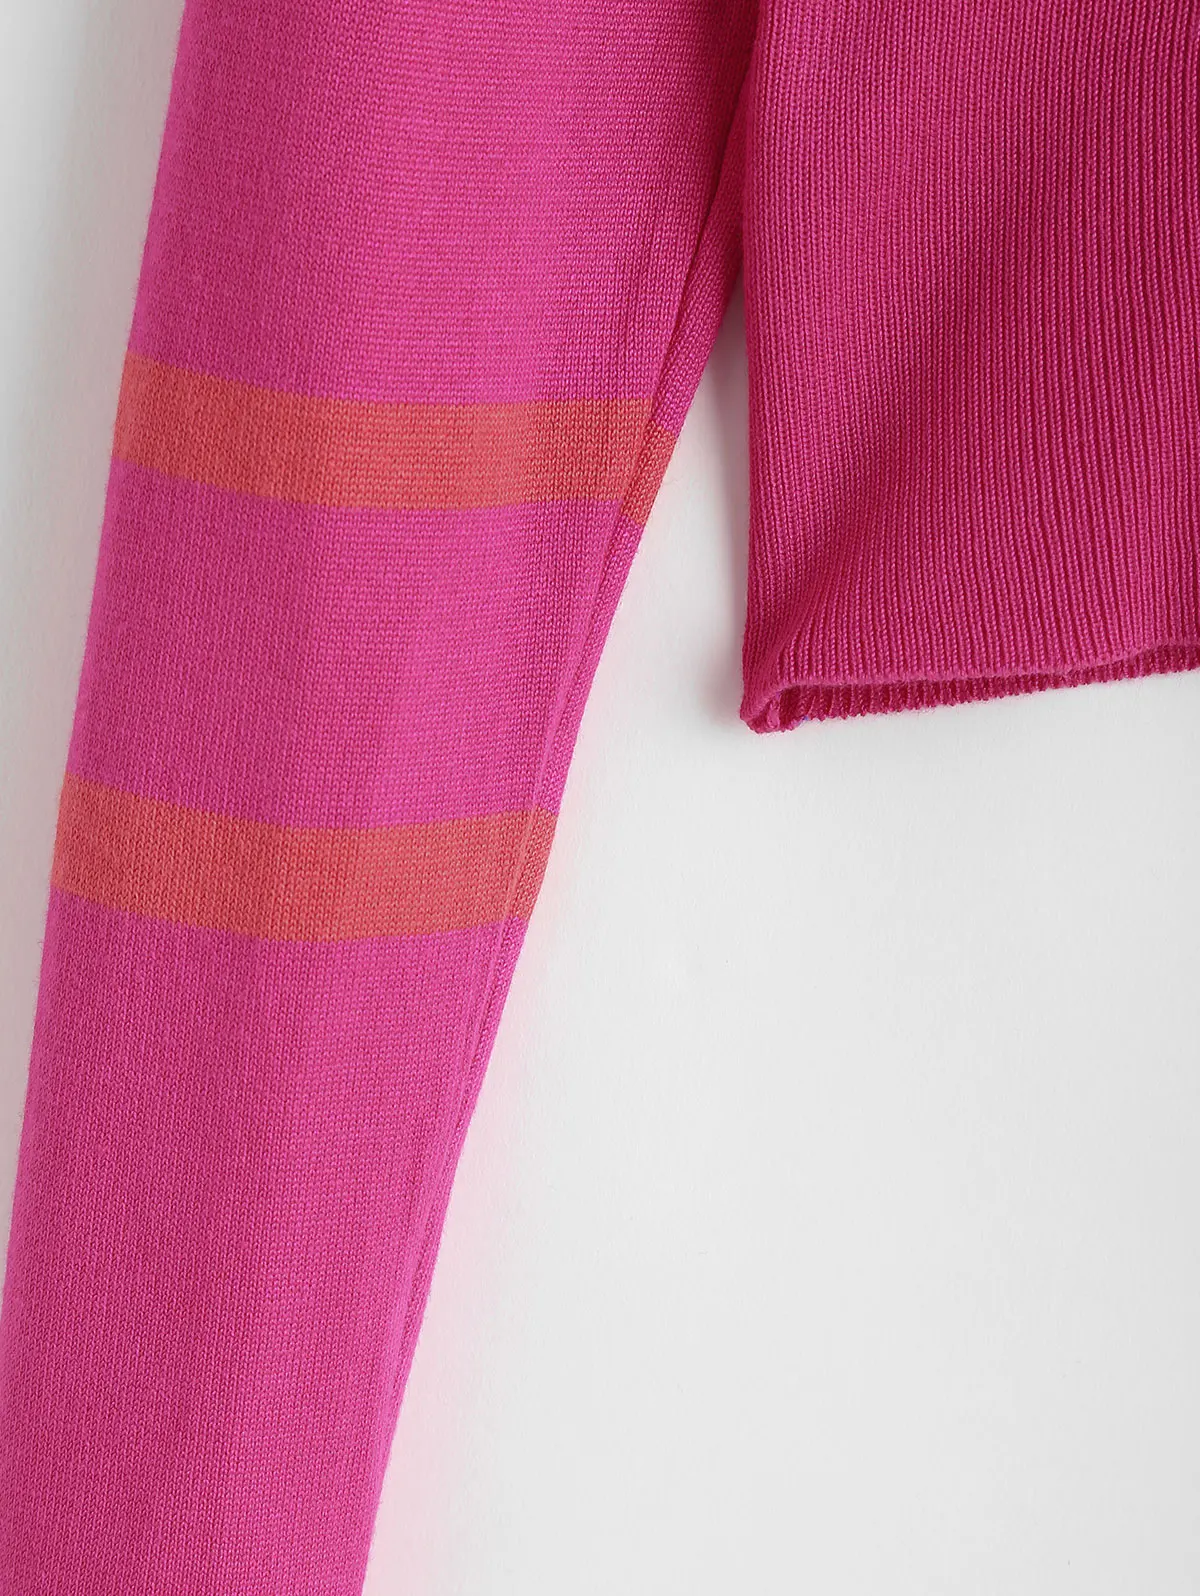 Zabul полосатый свитер с круглым вырезом укороченный топ с эластичной резинкой на талии пуловеры женские осенние классические с круглым